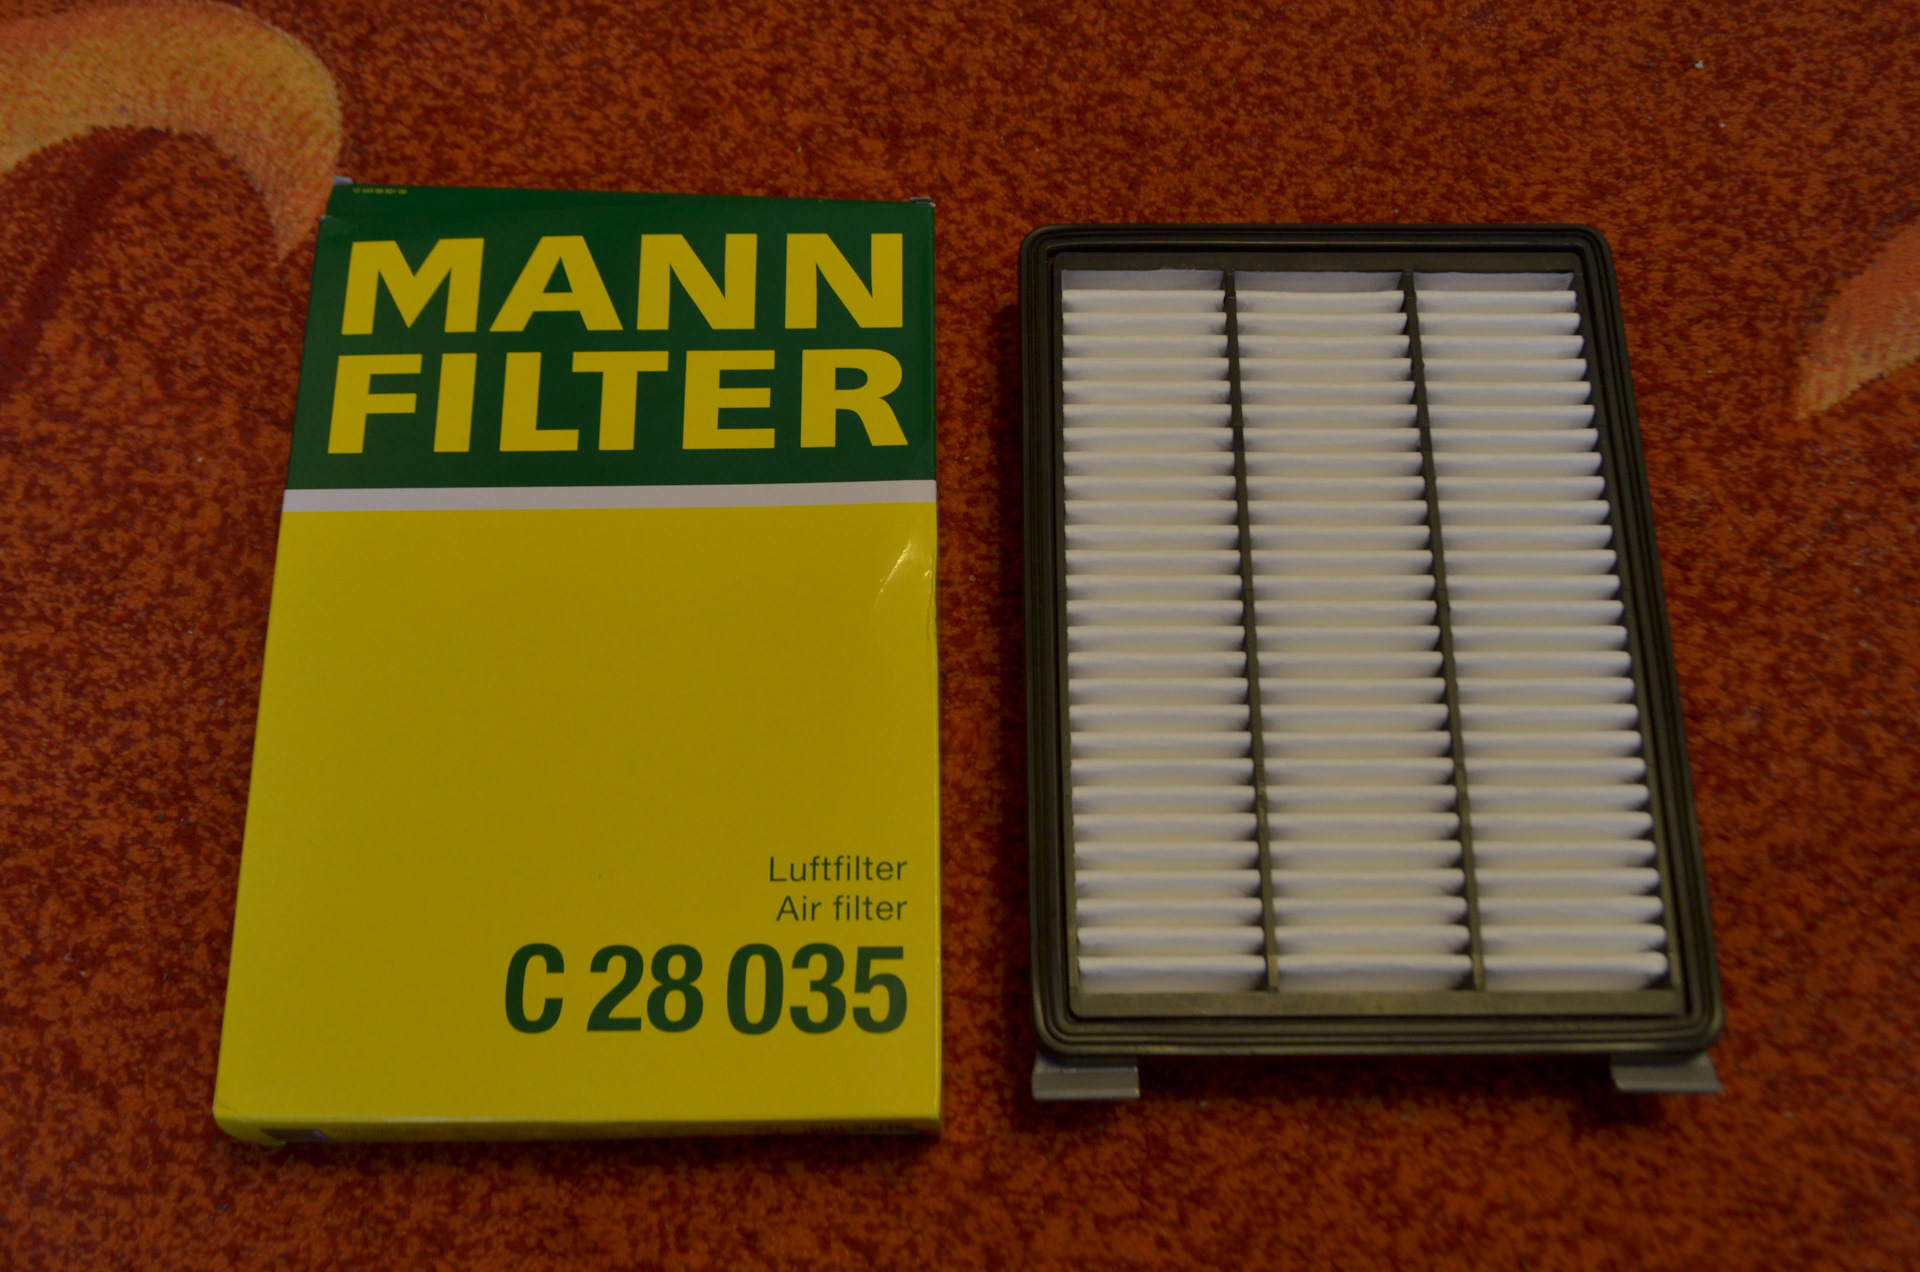 Mann filter воздушный фильтр. Воздушный фильтр Хендай Туксон 2.0. Фильтр воздушный Хендай Туссан 2.0. Фильтр воздушный Mann c 28 035. Hyundai Tucson 2021 2.0 фильтр воздушный.